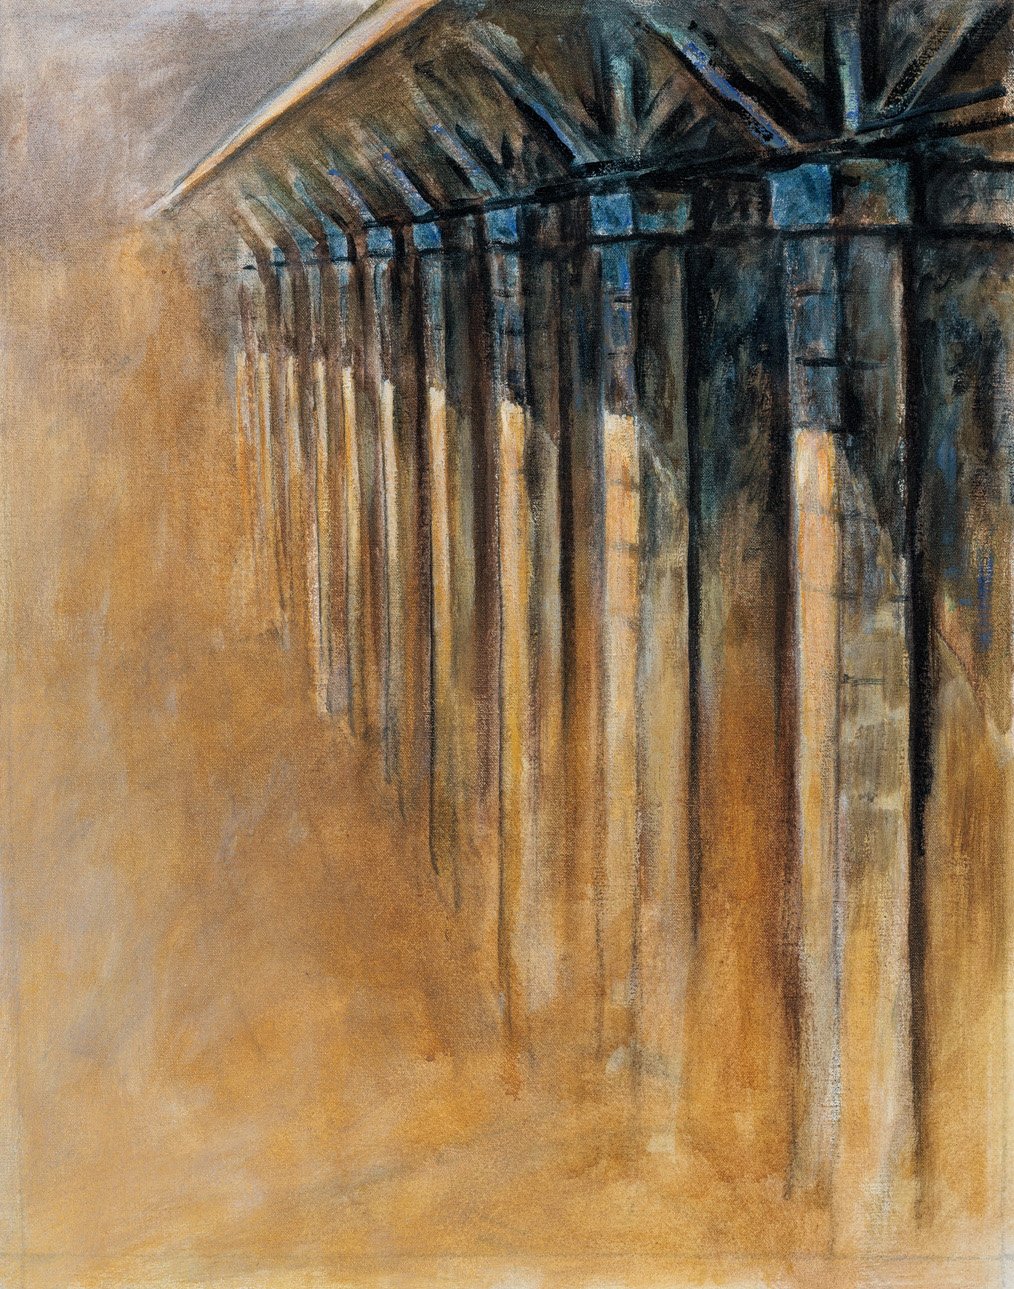 Leaside Bridge, Toronto, ON - 30” x 24”,  Acrylic on Canvas, $1200